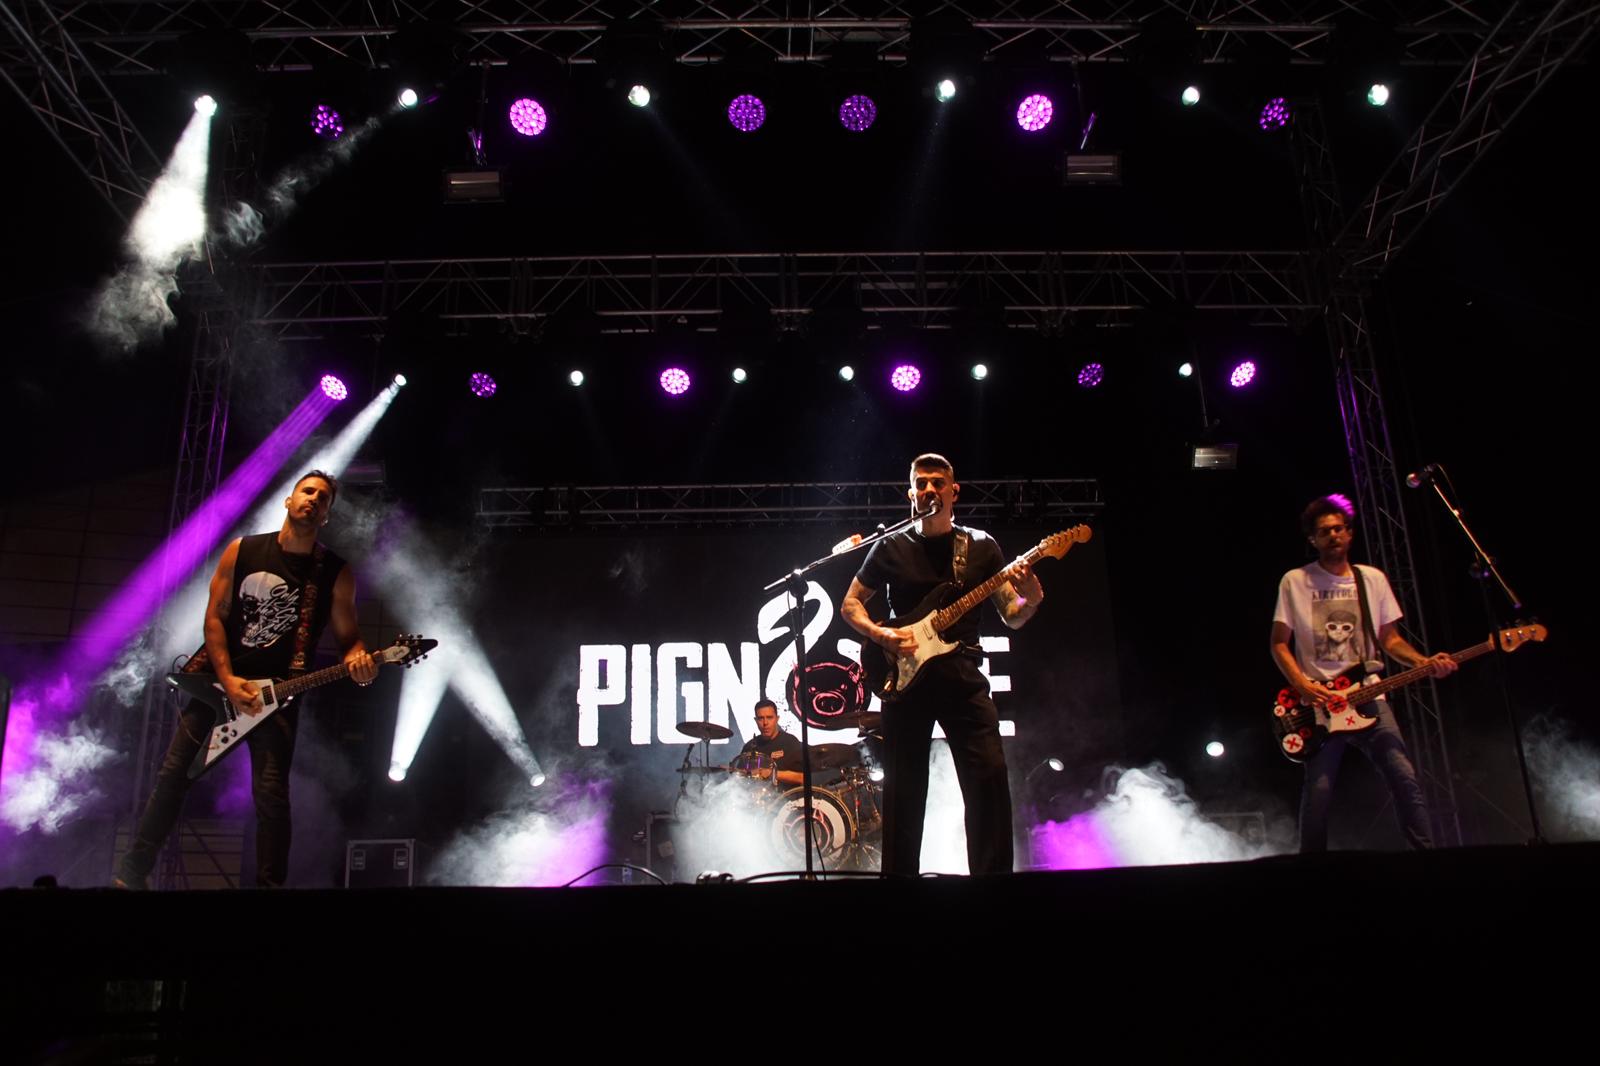 Concierto de Pignoise en Santa Marta. Fotografías: Juanes